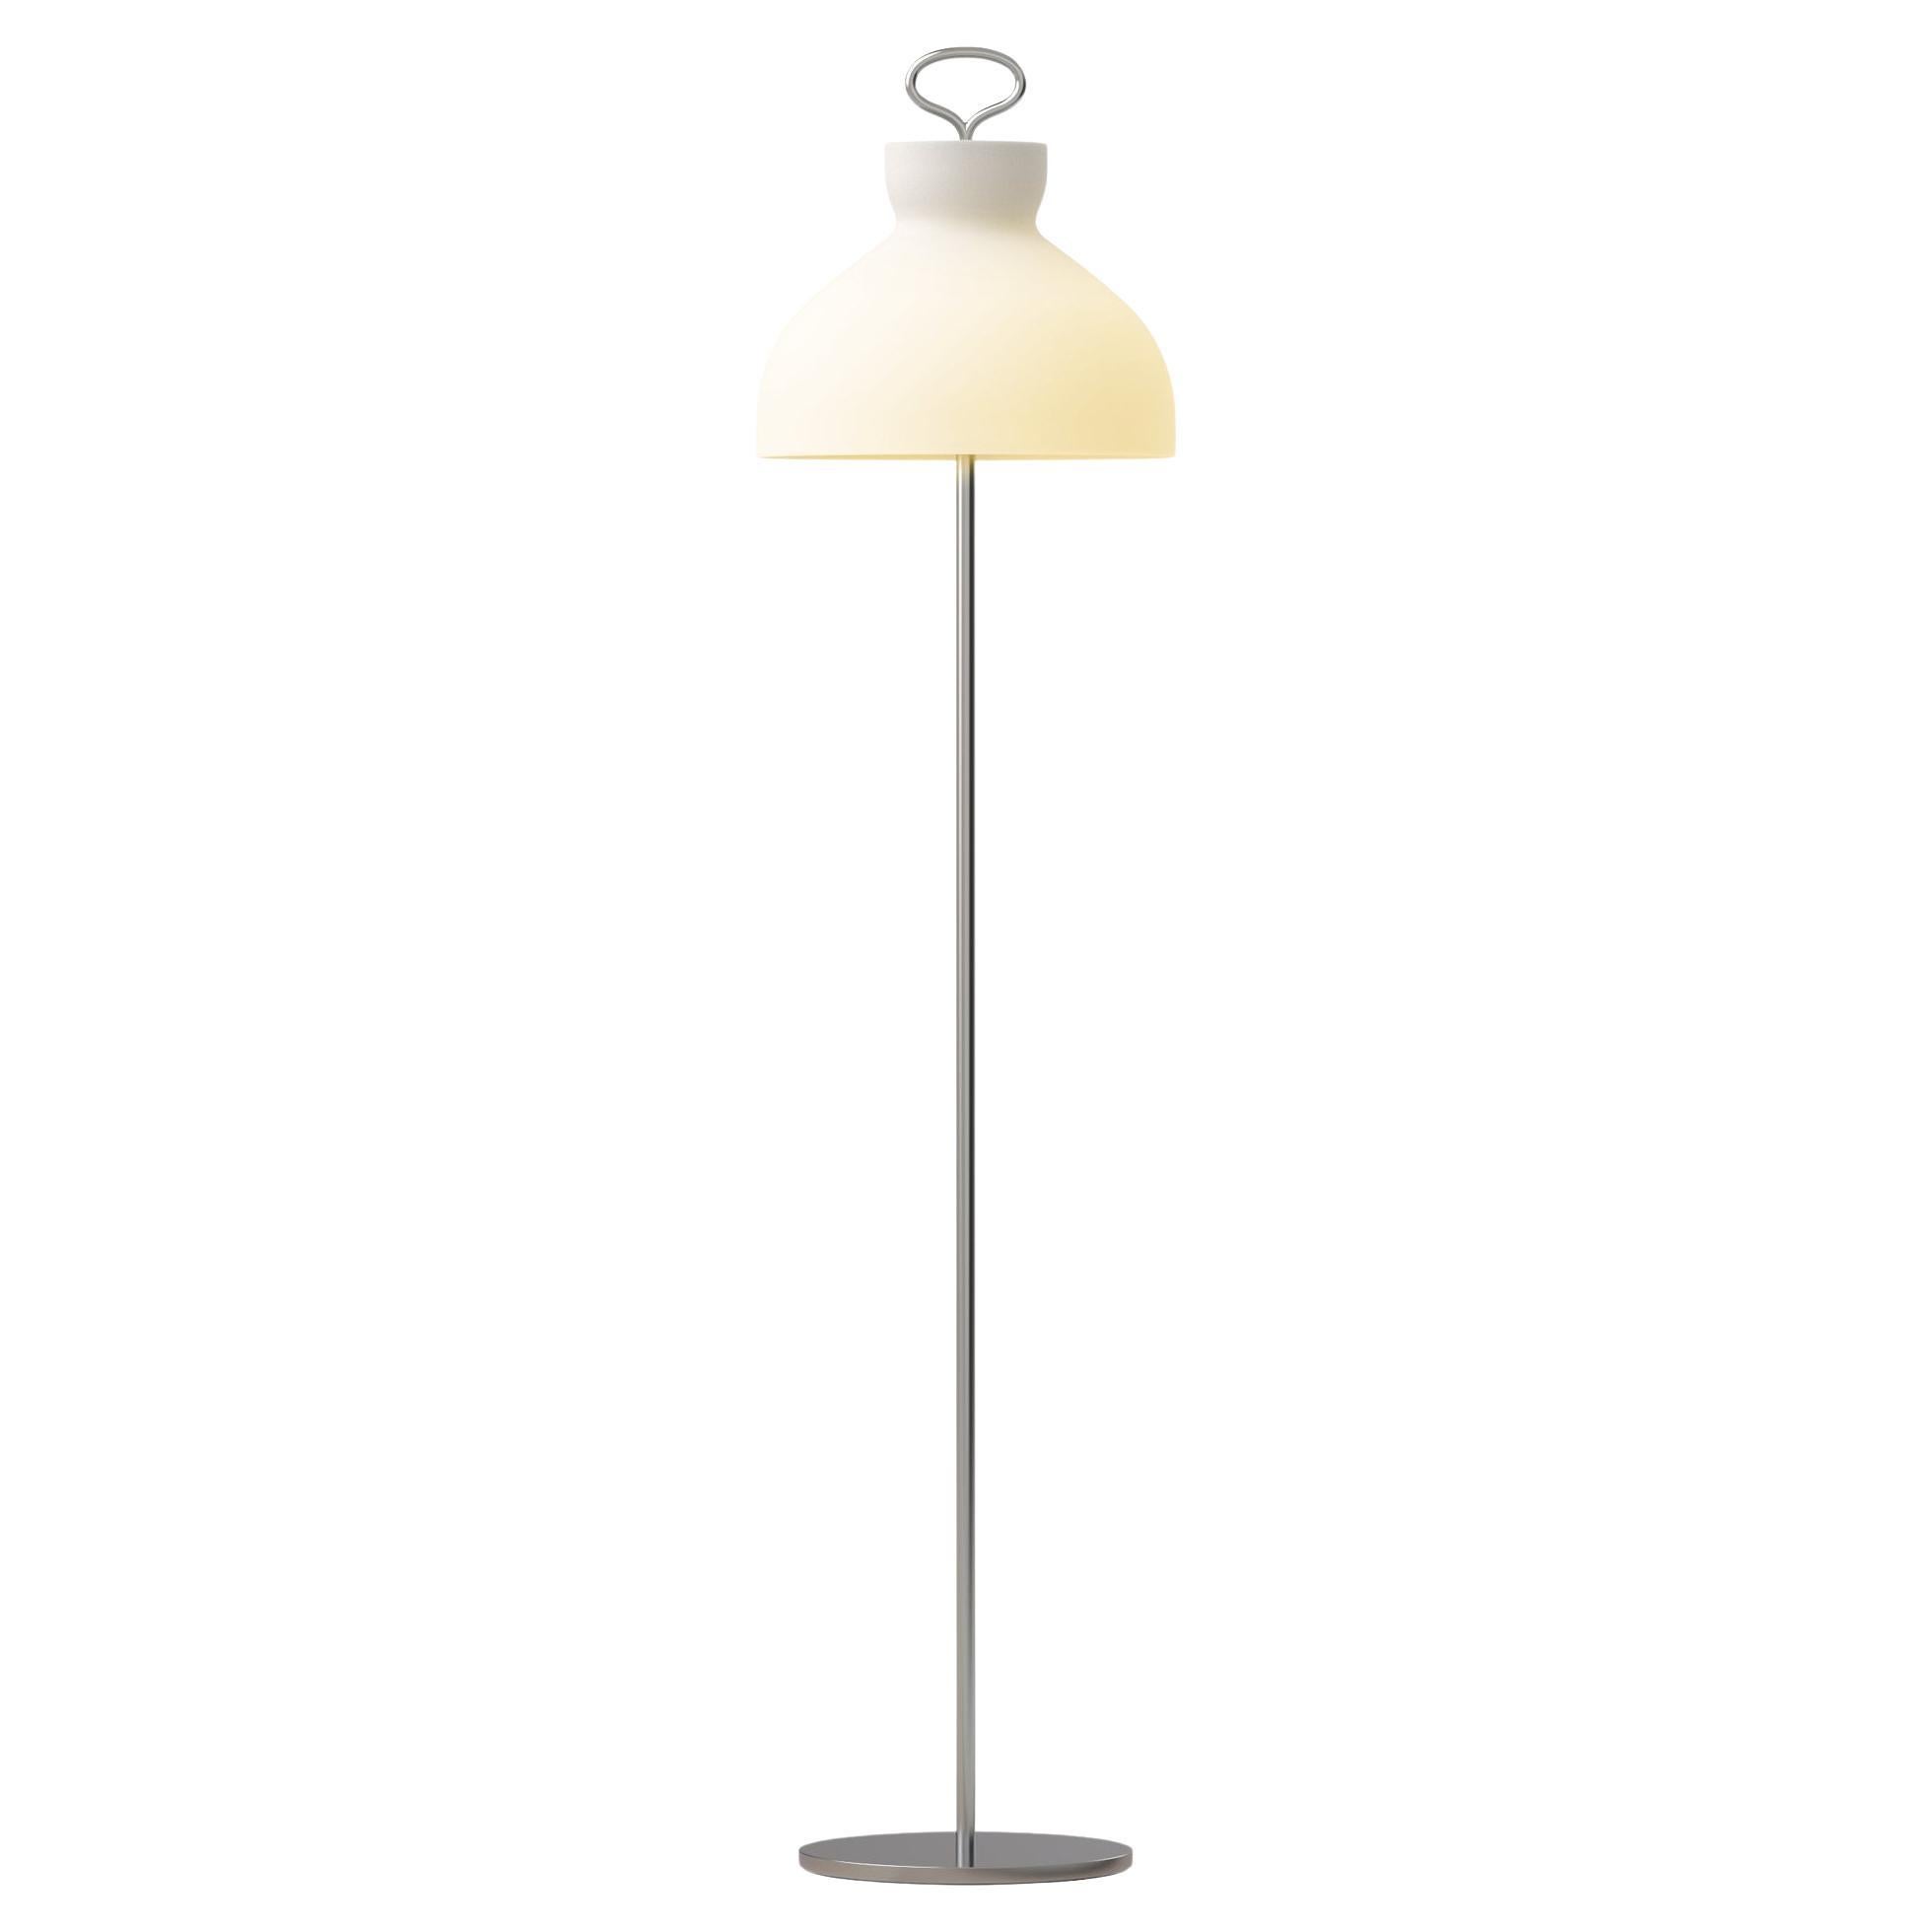 Ignazio Gardella 'Arenzano Terra' Floor Lamp in Chrome and Glass For Sale